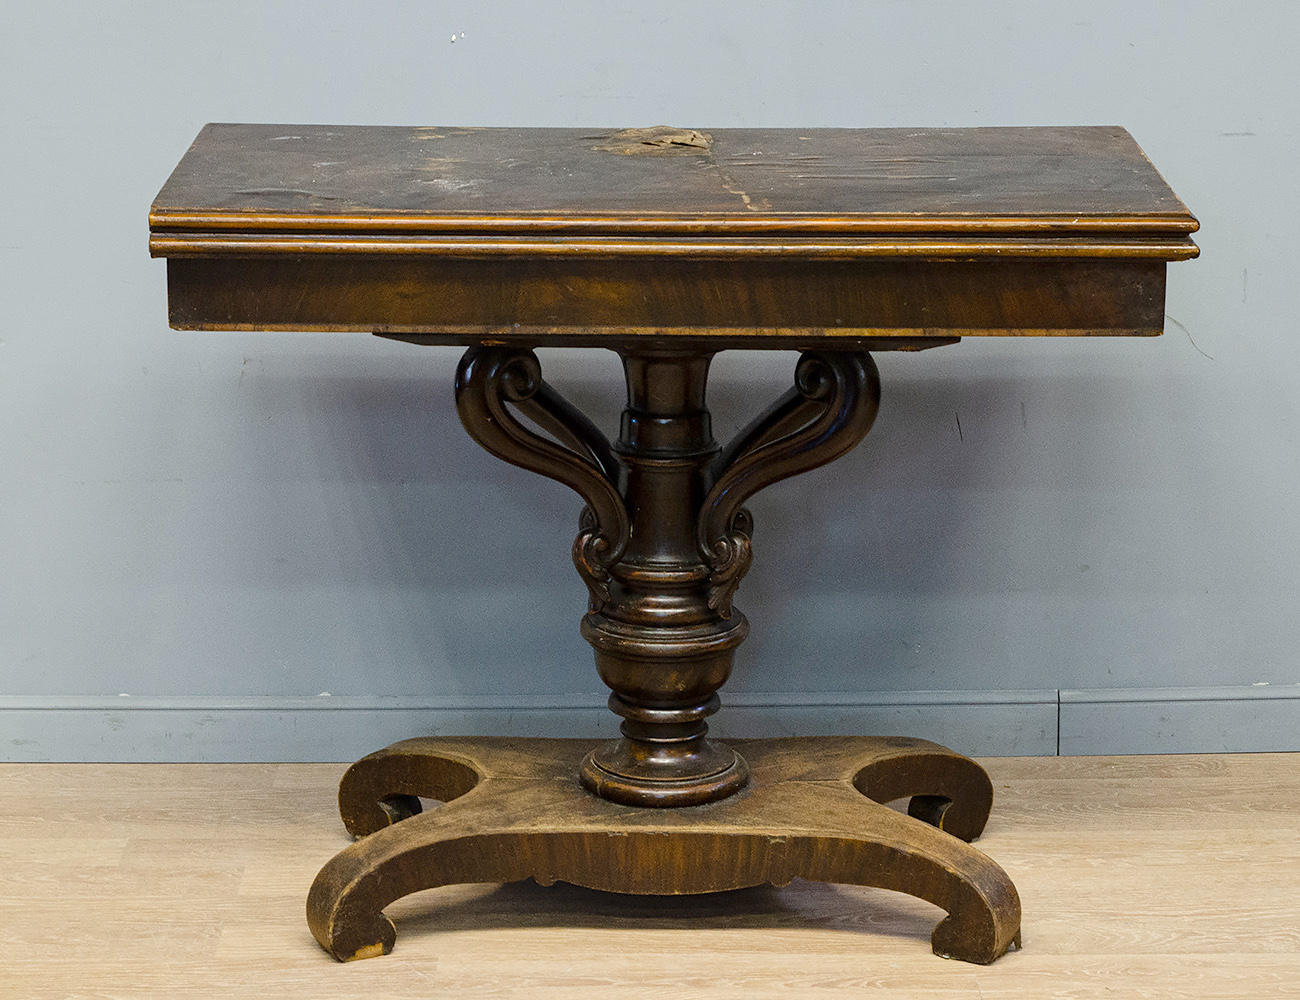 Ломберный стол 19 век. Журнальный столик 19 века. Антикварный ломберный стол. Старинные столы из дерева. Памятный стол